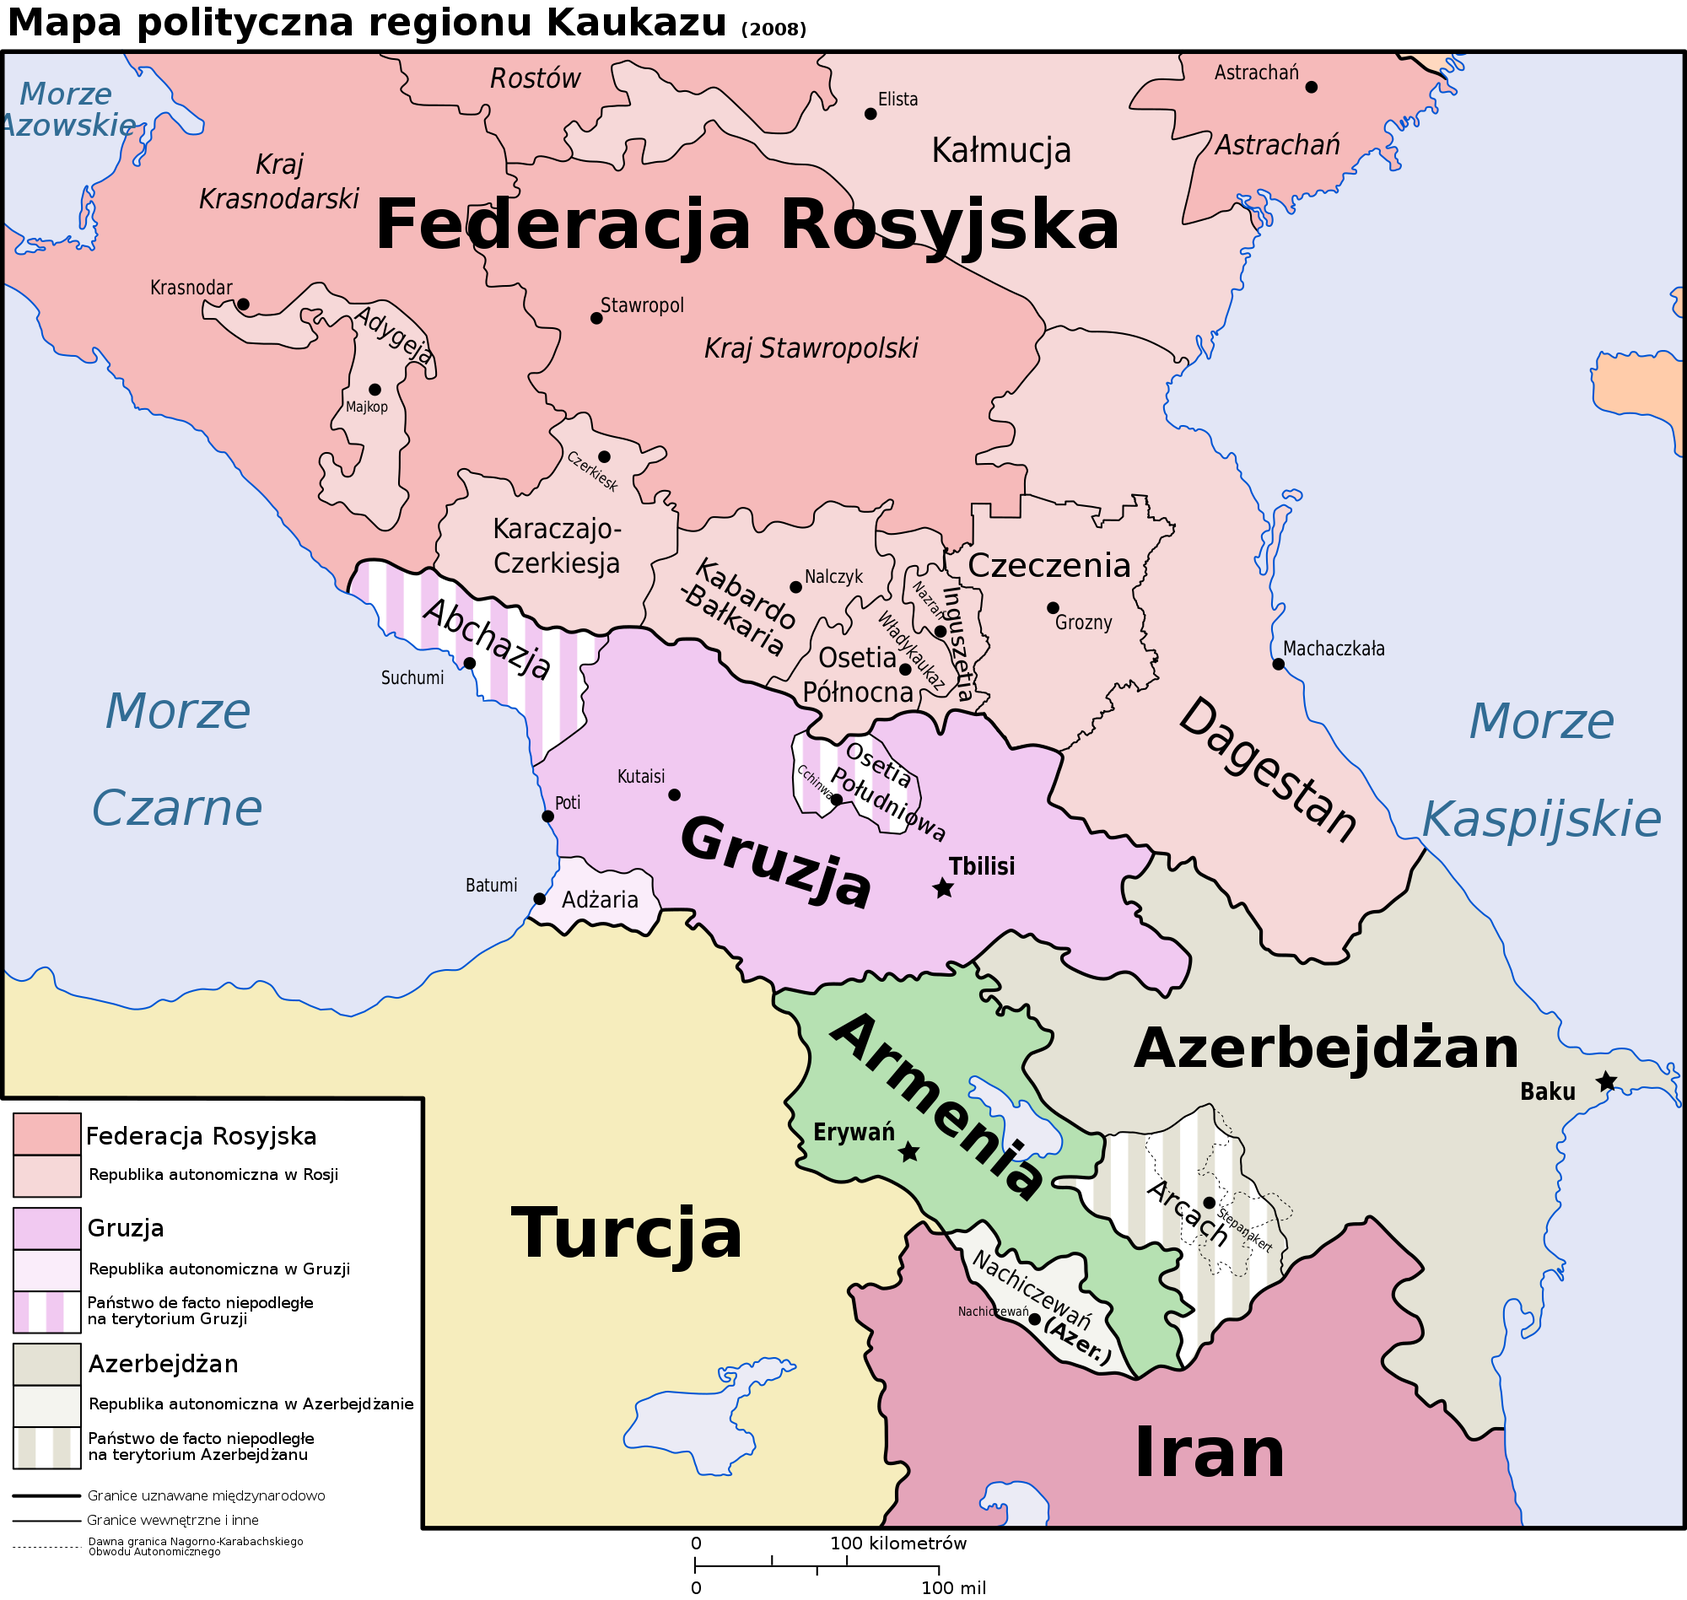 Mapa polityczna regionu Kaukazu. Kolorem różowym zaznaczono Federację Rosyjską, a kolorem jasnoróżowym republiki autonomiczne w Rosji. Są to: Adygeja, Kałmucja, Dagestan, Czeczenia, Inguszetia, Osetia Północna, Kabardo‑Bałkaria, Karaczajo‑Czerkiesja. Kolorem jasnofioletowym zaznaczono Gruzję. Pasami fioletowo‑białymi zaznaczono państwa de facto niepodległe na terytorium Gruzji. Są to: Abchazja, Osetia Południowa. Kolorem białym zaznaczono republikę autonomiczną Gruzji, jest to Adżaria. Kolorem szarym zaznaczono Azerbejdżan. Szaro‑białymi pasami zaznaczono państwo de facto niepodległe na terytorium Azerbejdżanu, jest to Arcach. Kolorem jasnoszarym zaznaczono republikę autonomiczną Azerbejdżanu, jest to Nachiczewań.